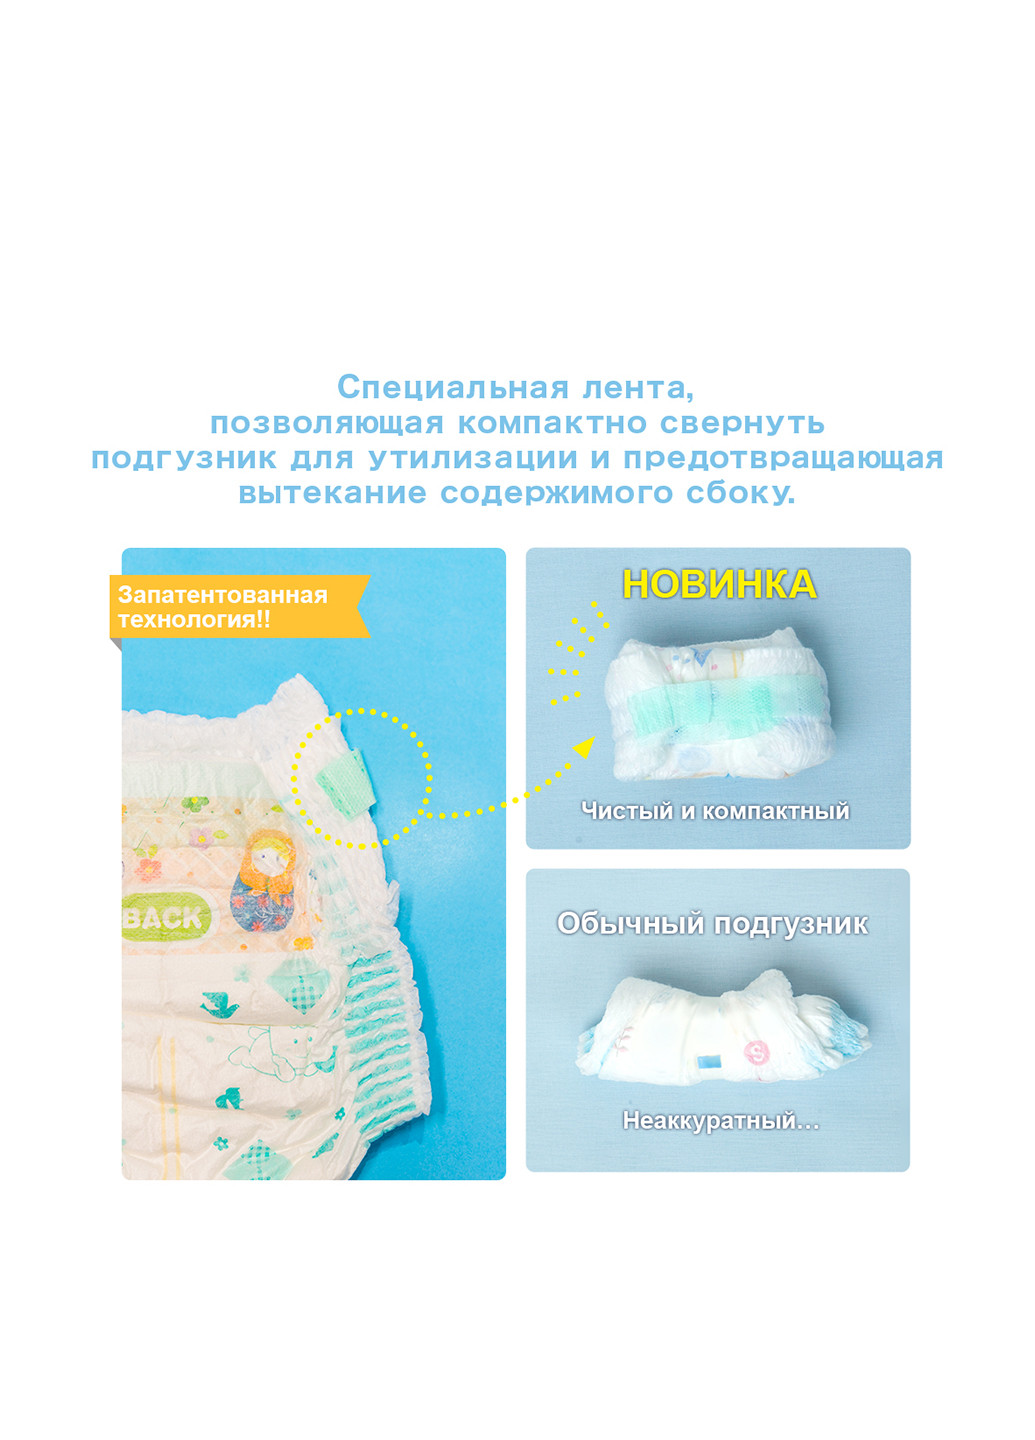 Подгузники L (9-14 кг) Baby Diapers (54 шт.) Moony (196205248)